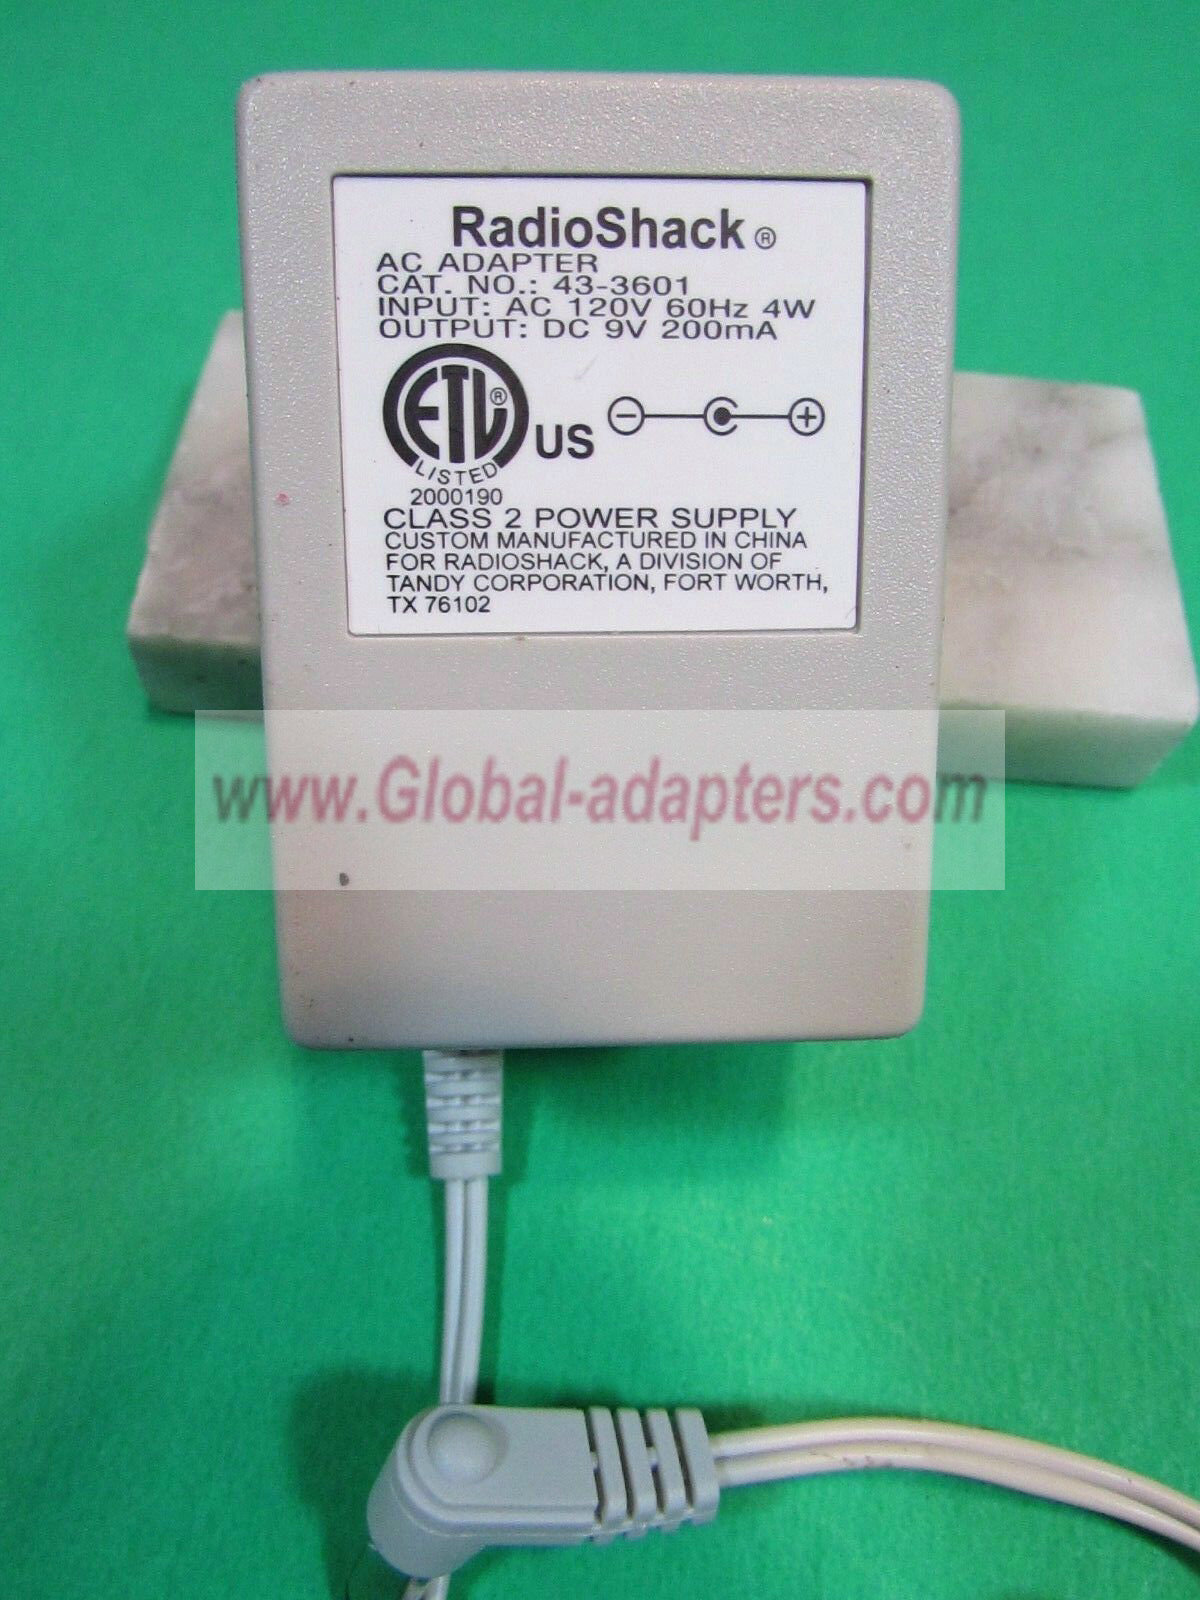 NEW 9V 200mA Radio Shack 43-3601 Power Supply AC Adapter